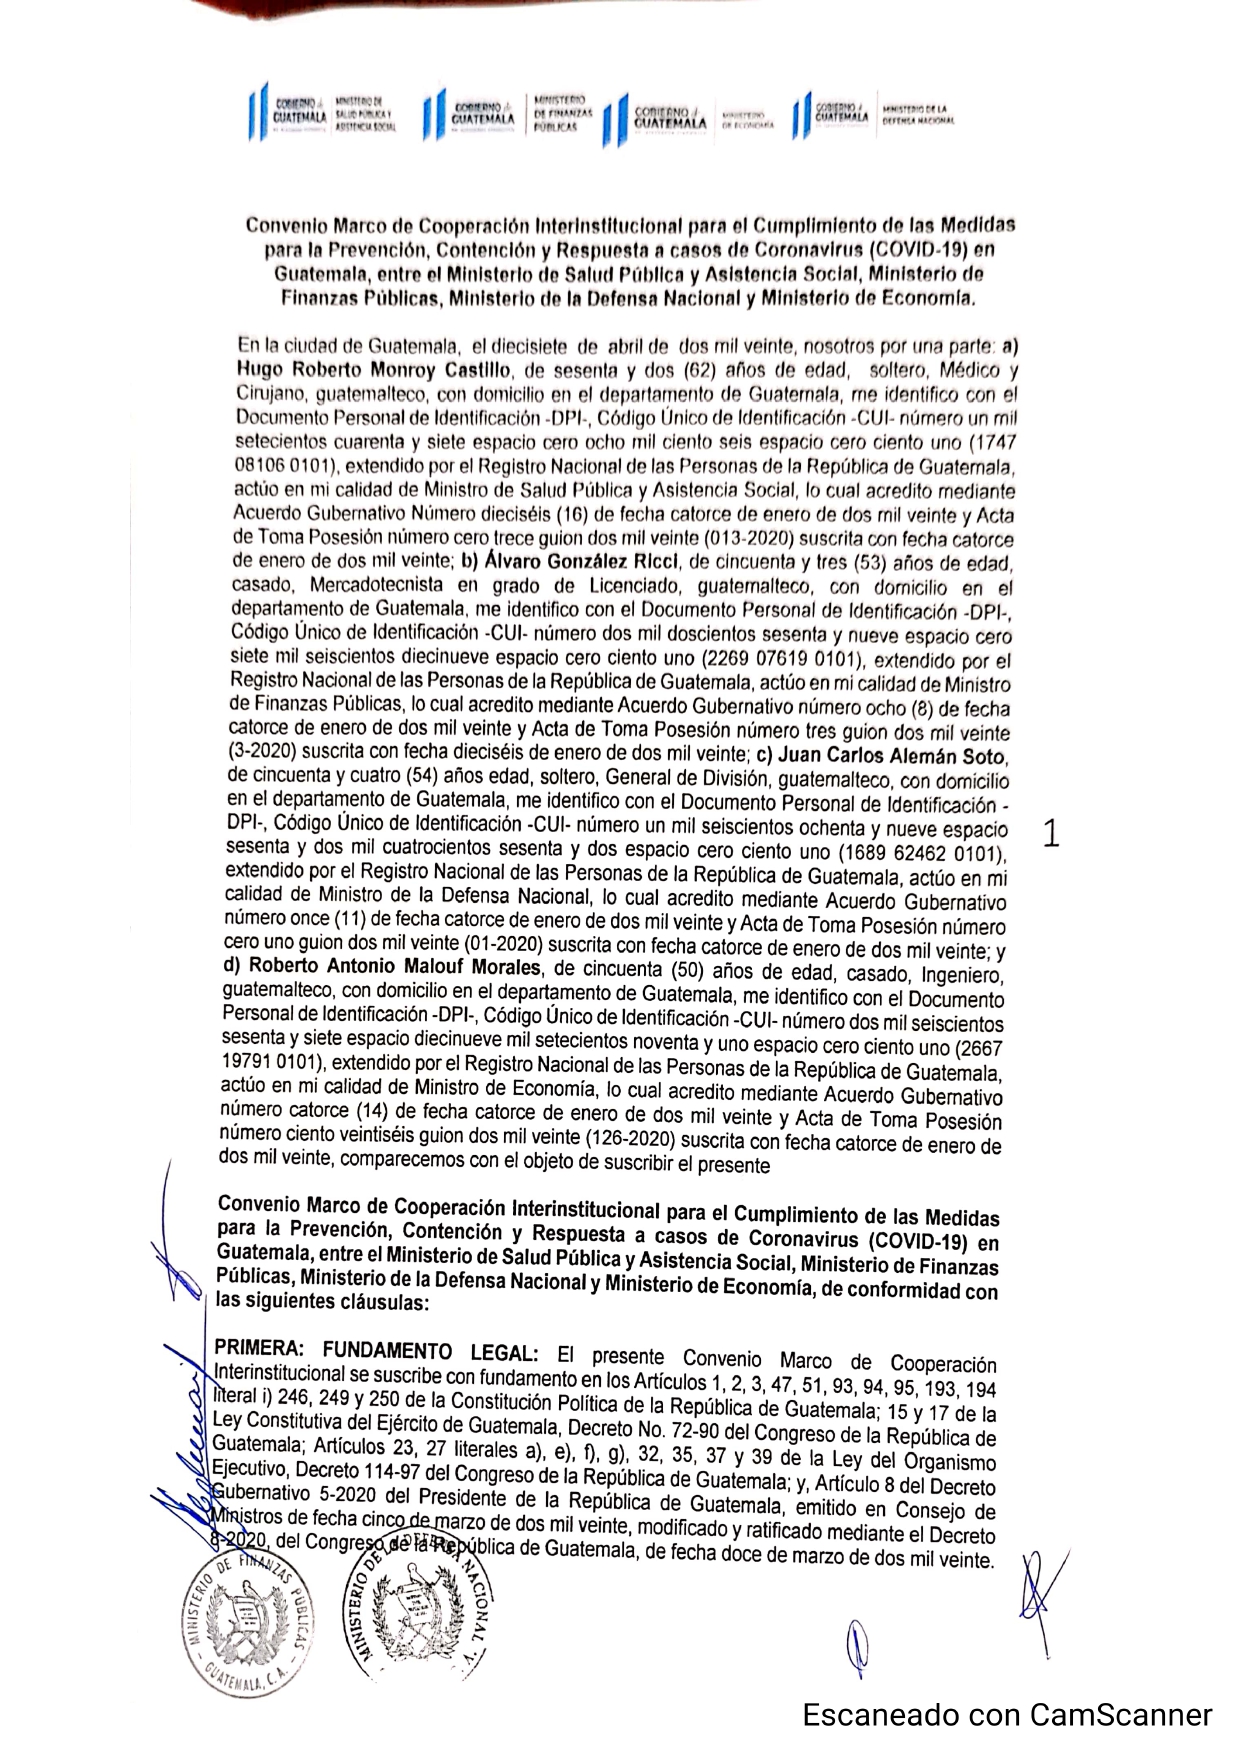 Convenio Marco de Cooperación Interinstitucional para el Cumplimiento de  las Medidas para Prevención, Contención y Respuesta a casos de Coronavirus  (COVID-19) en Guatemala